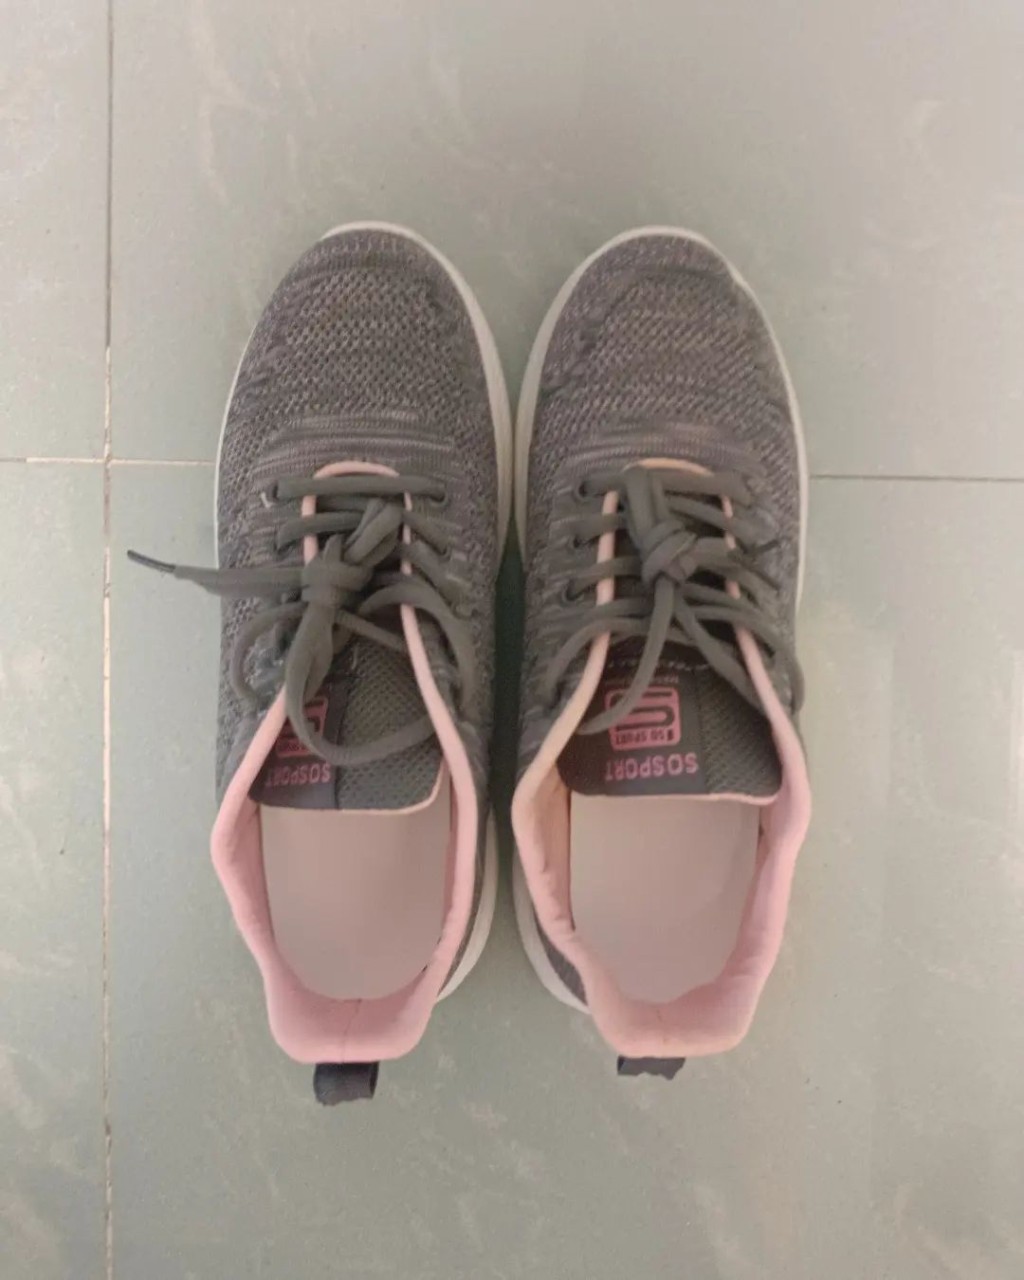 之後薛影儀晒一雙只售60蚊的深灰拼粉紅的不知名品牌波鞋，估計是為出戰明年1月舉辦的渣打馬拉松作準備。